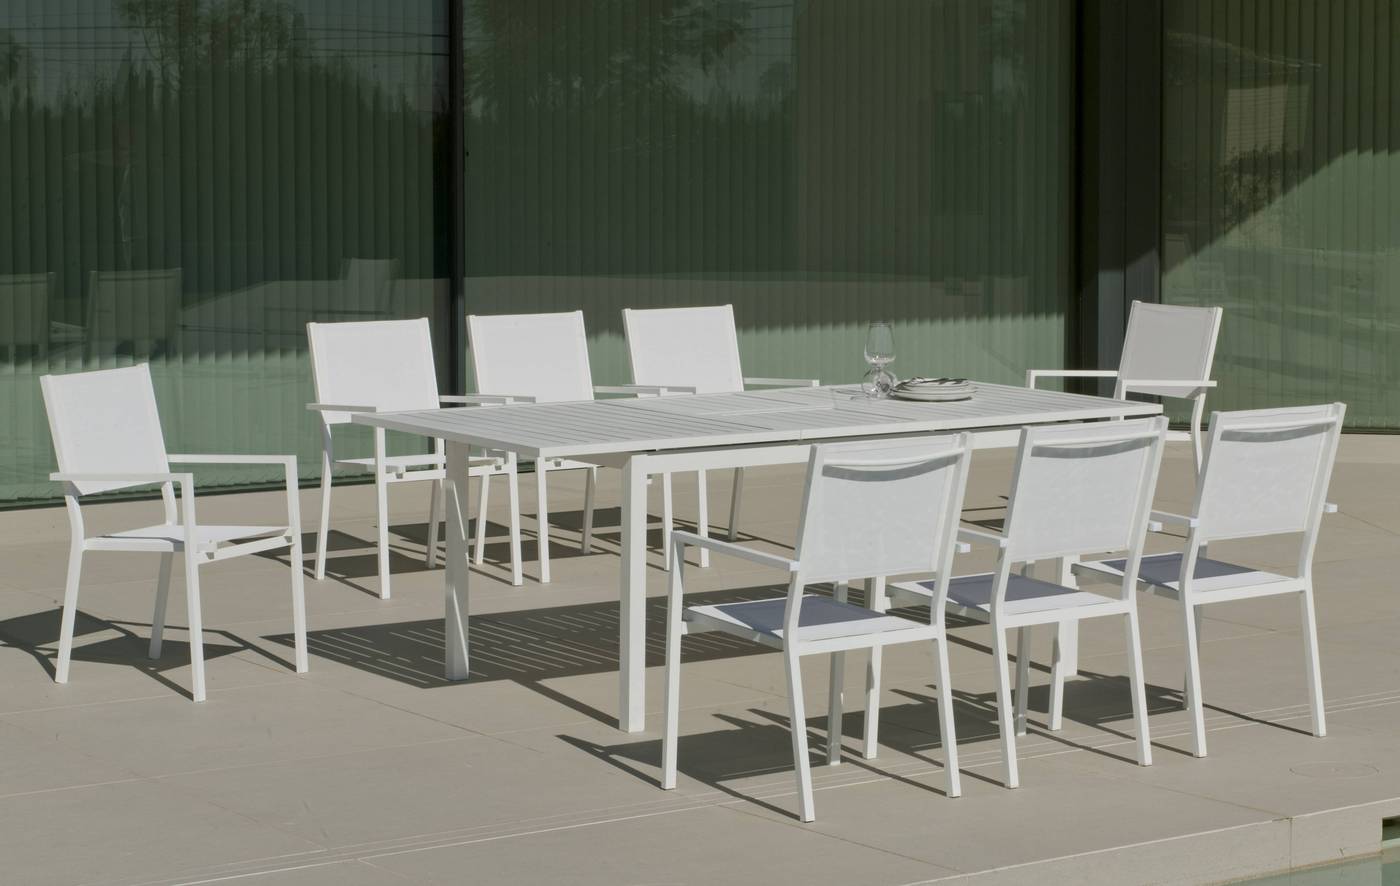 Set Aluminio PalmaExt-Córcega 200-6 - Conjunto de aluminio luxe: mesa extensible 150-200 cm. + 6 sillones de textilen. Disponible en color blanco, antracita, champagne, plata o marrón.